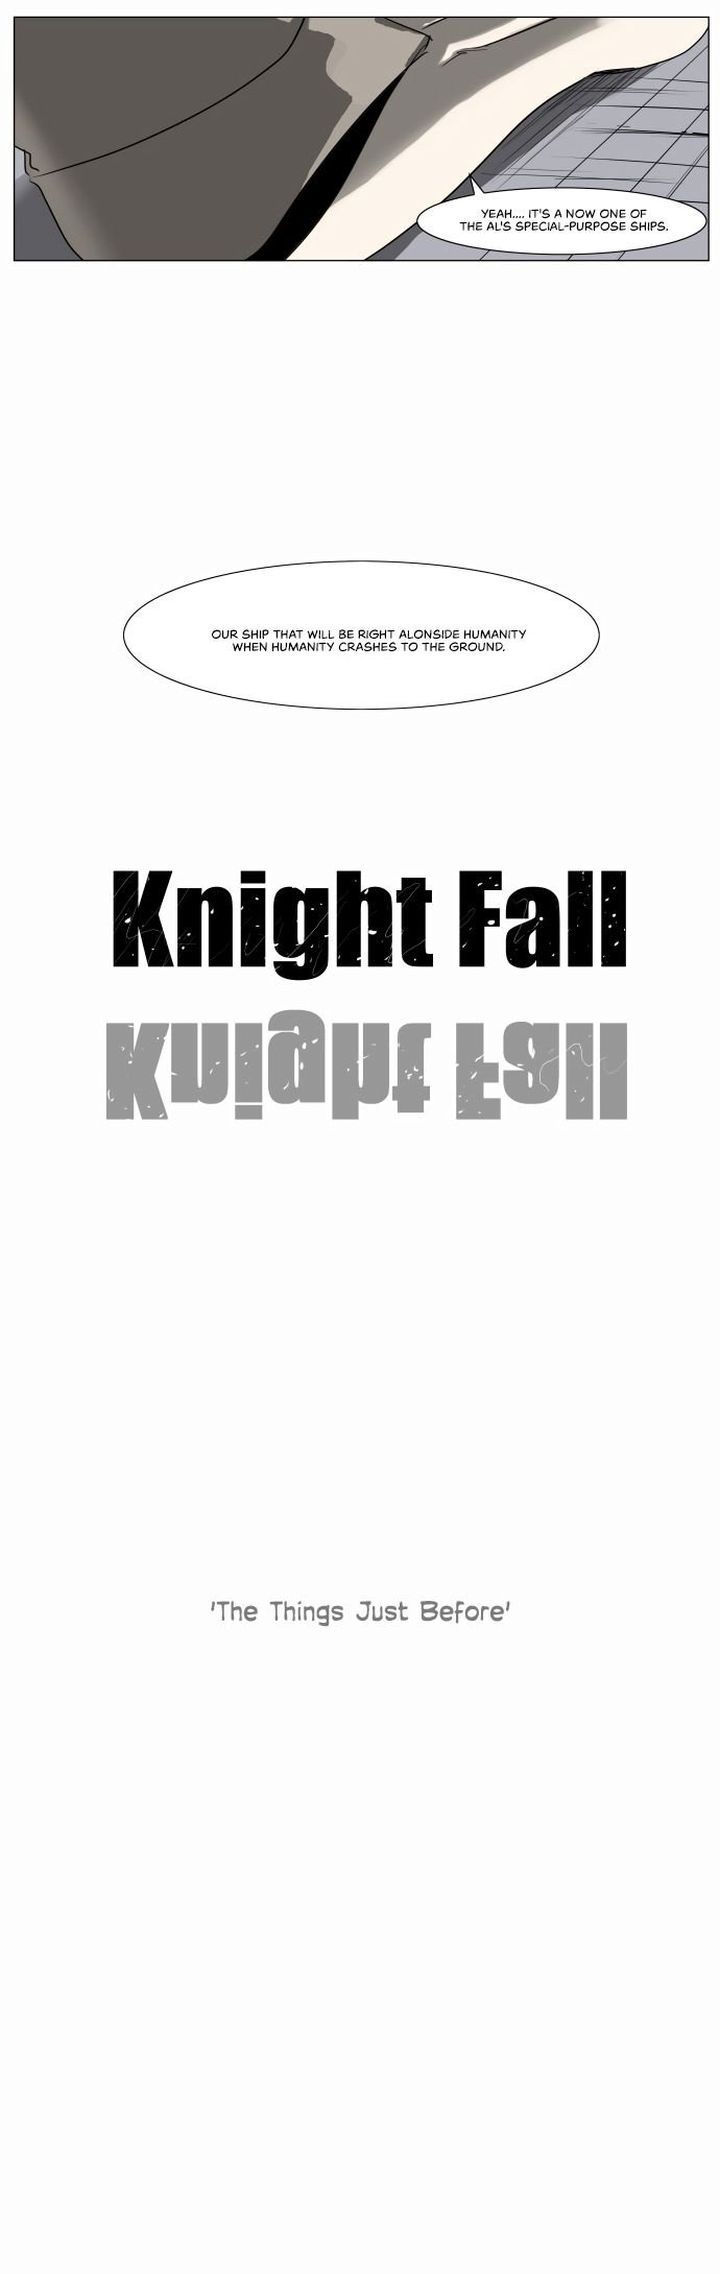 knight_run_216_21